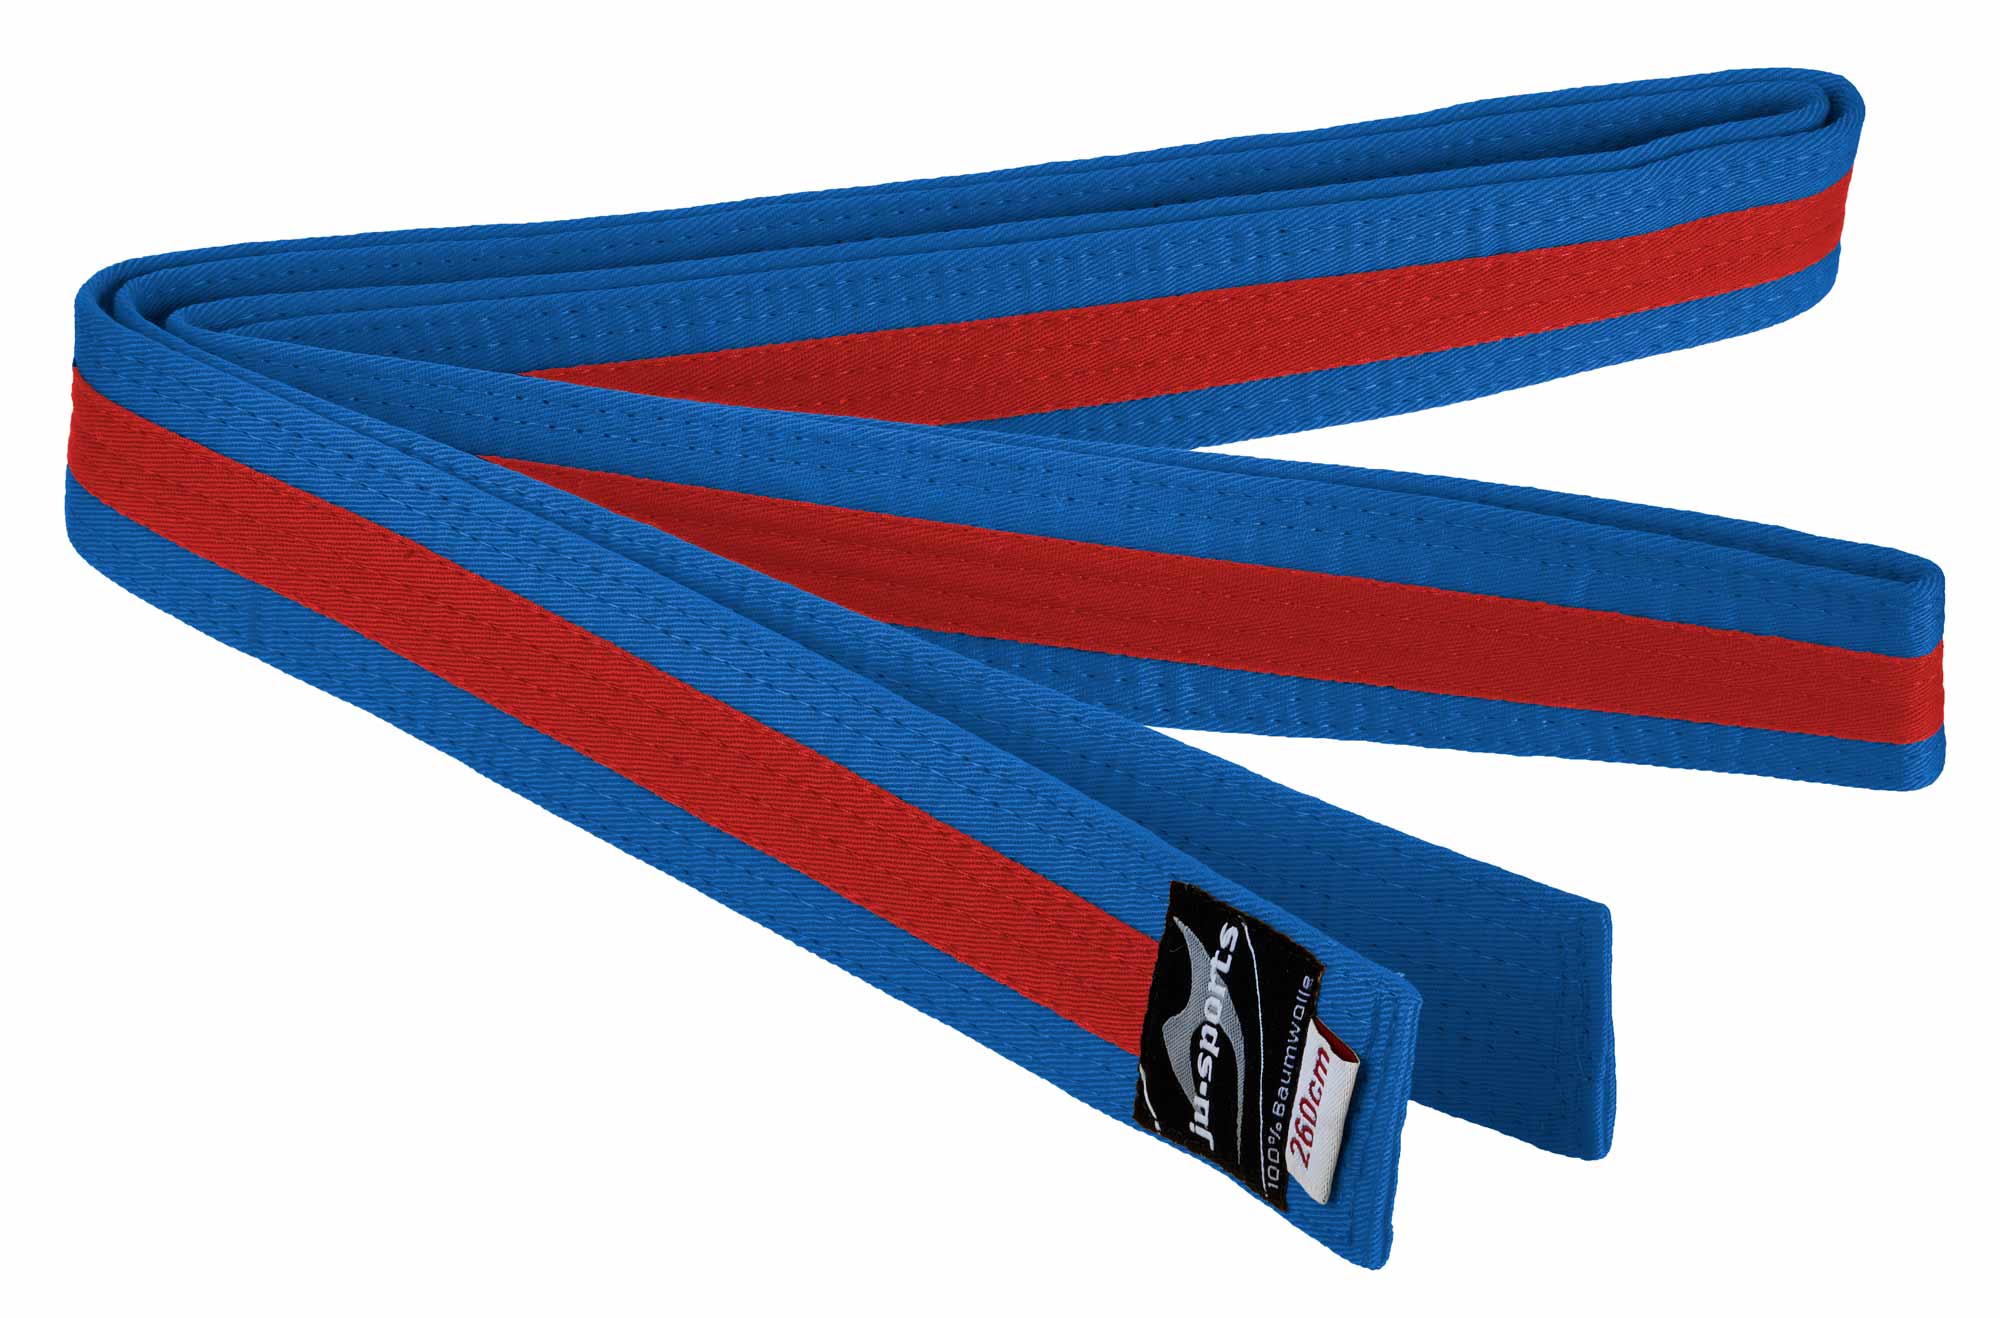 Ju-Sports budo belt blue/red/blue